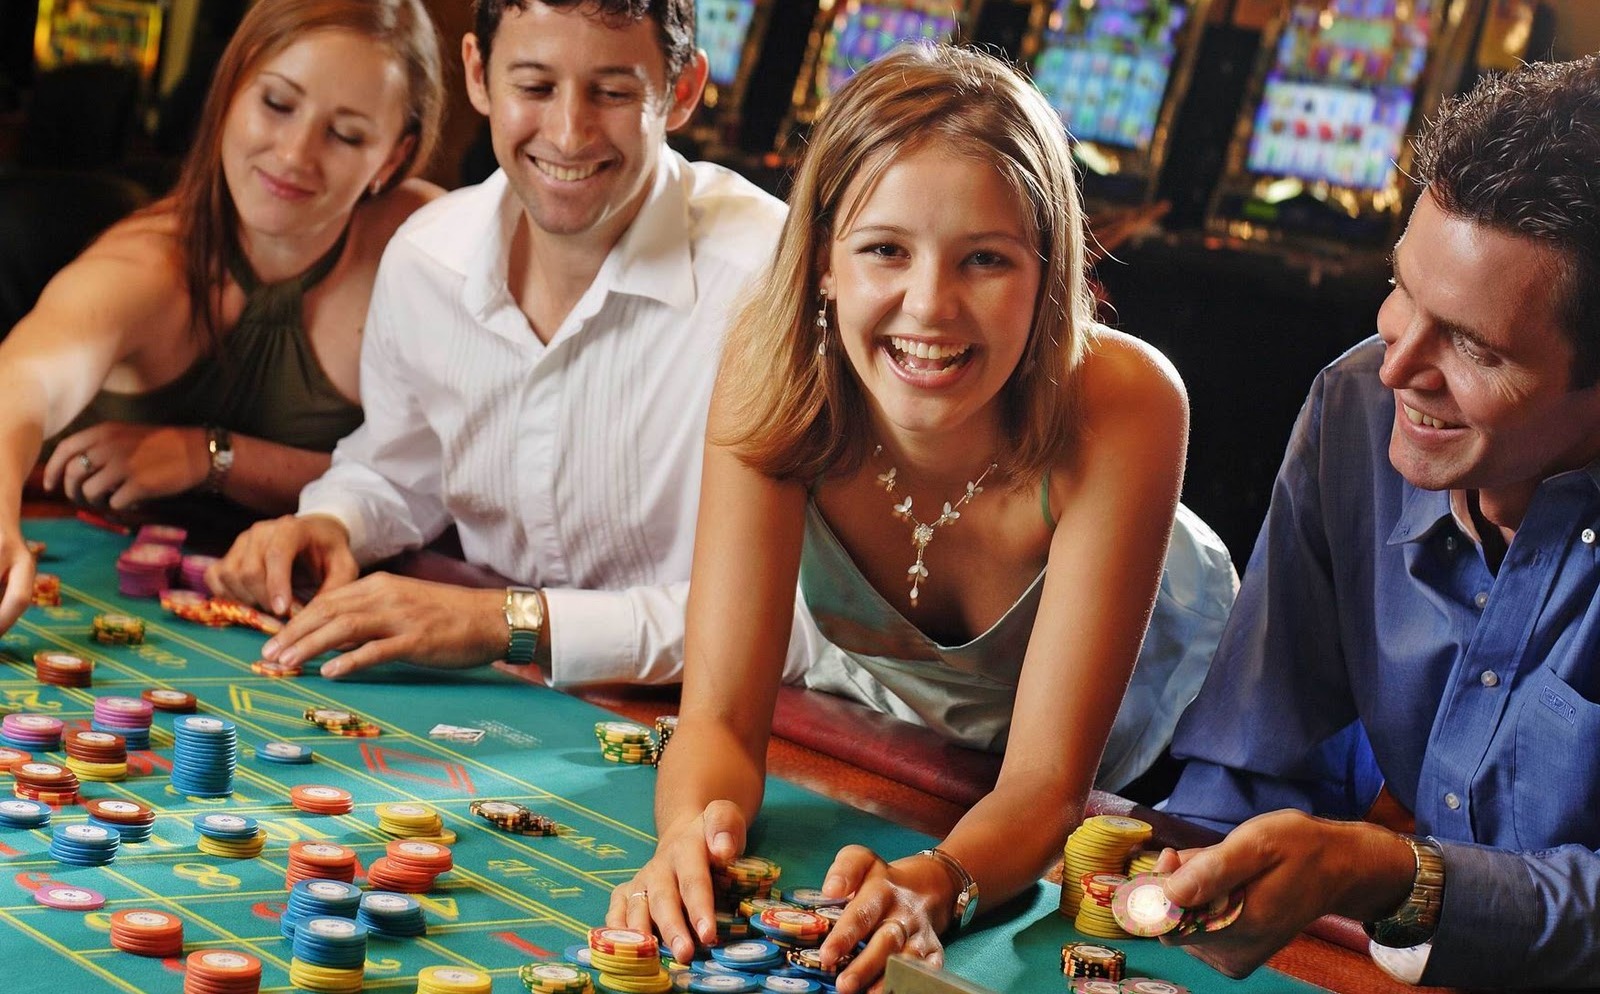 Компанию Google обвиняют в пропаганде азартных игр среди подростков. А когда сделана ваша первая ставка?